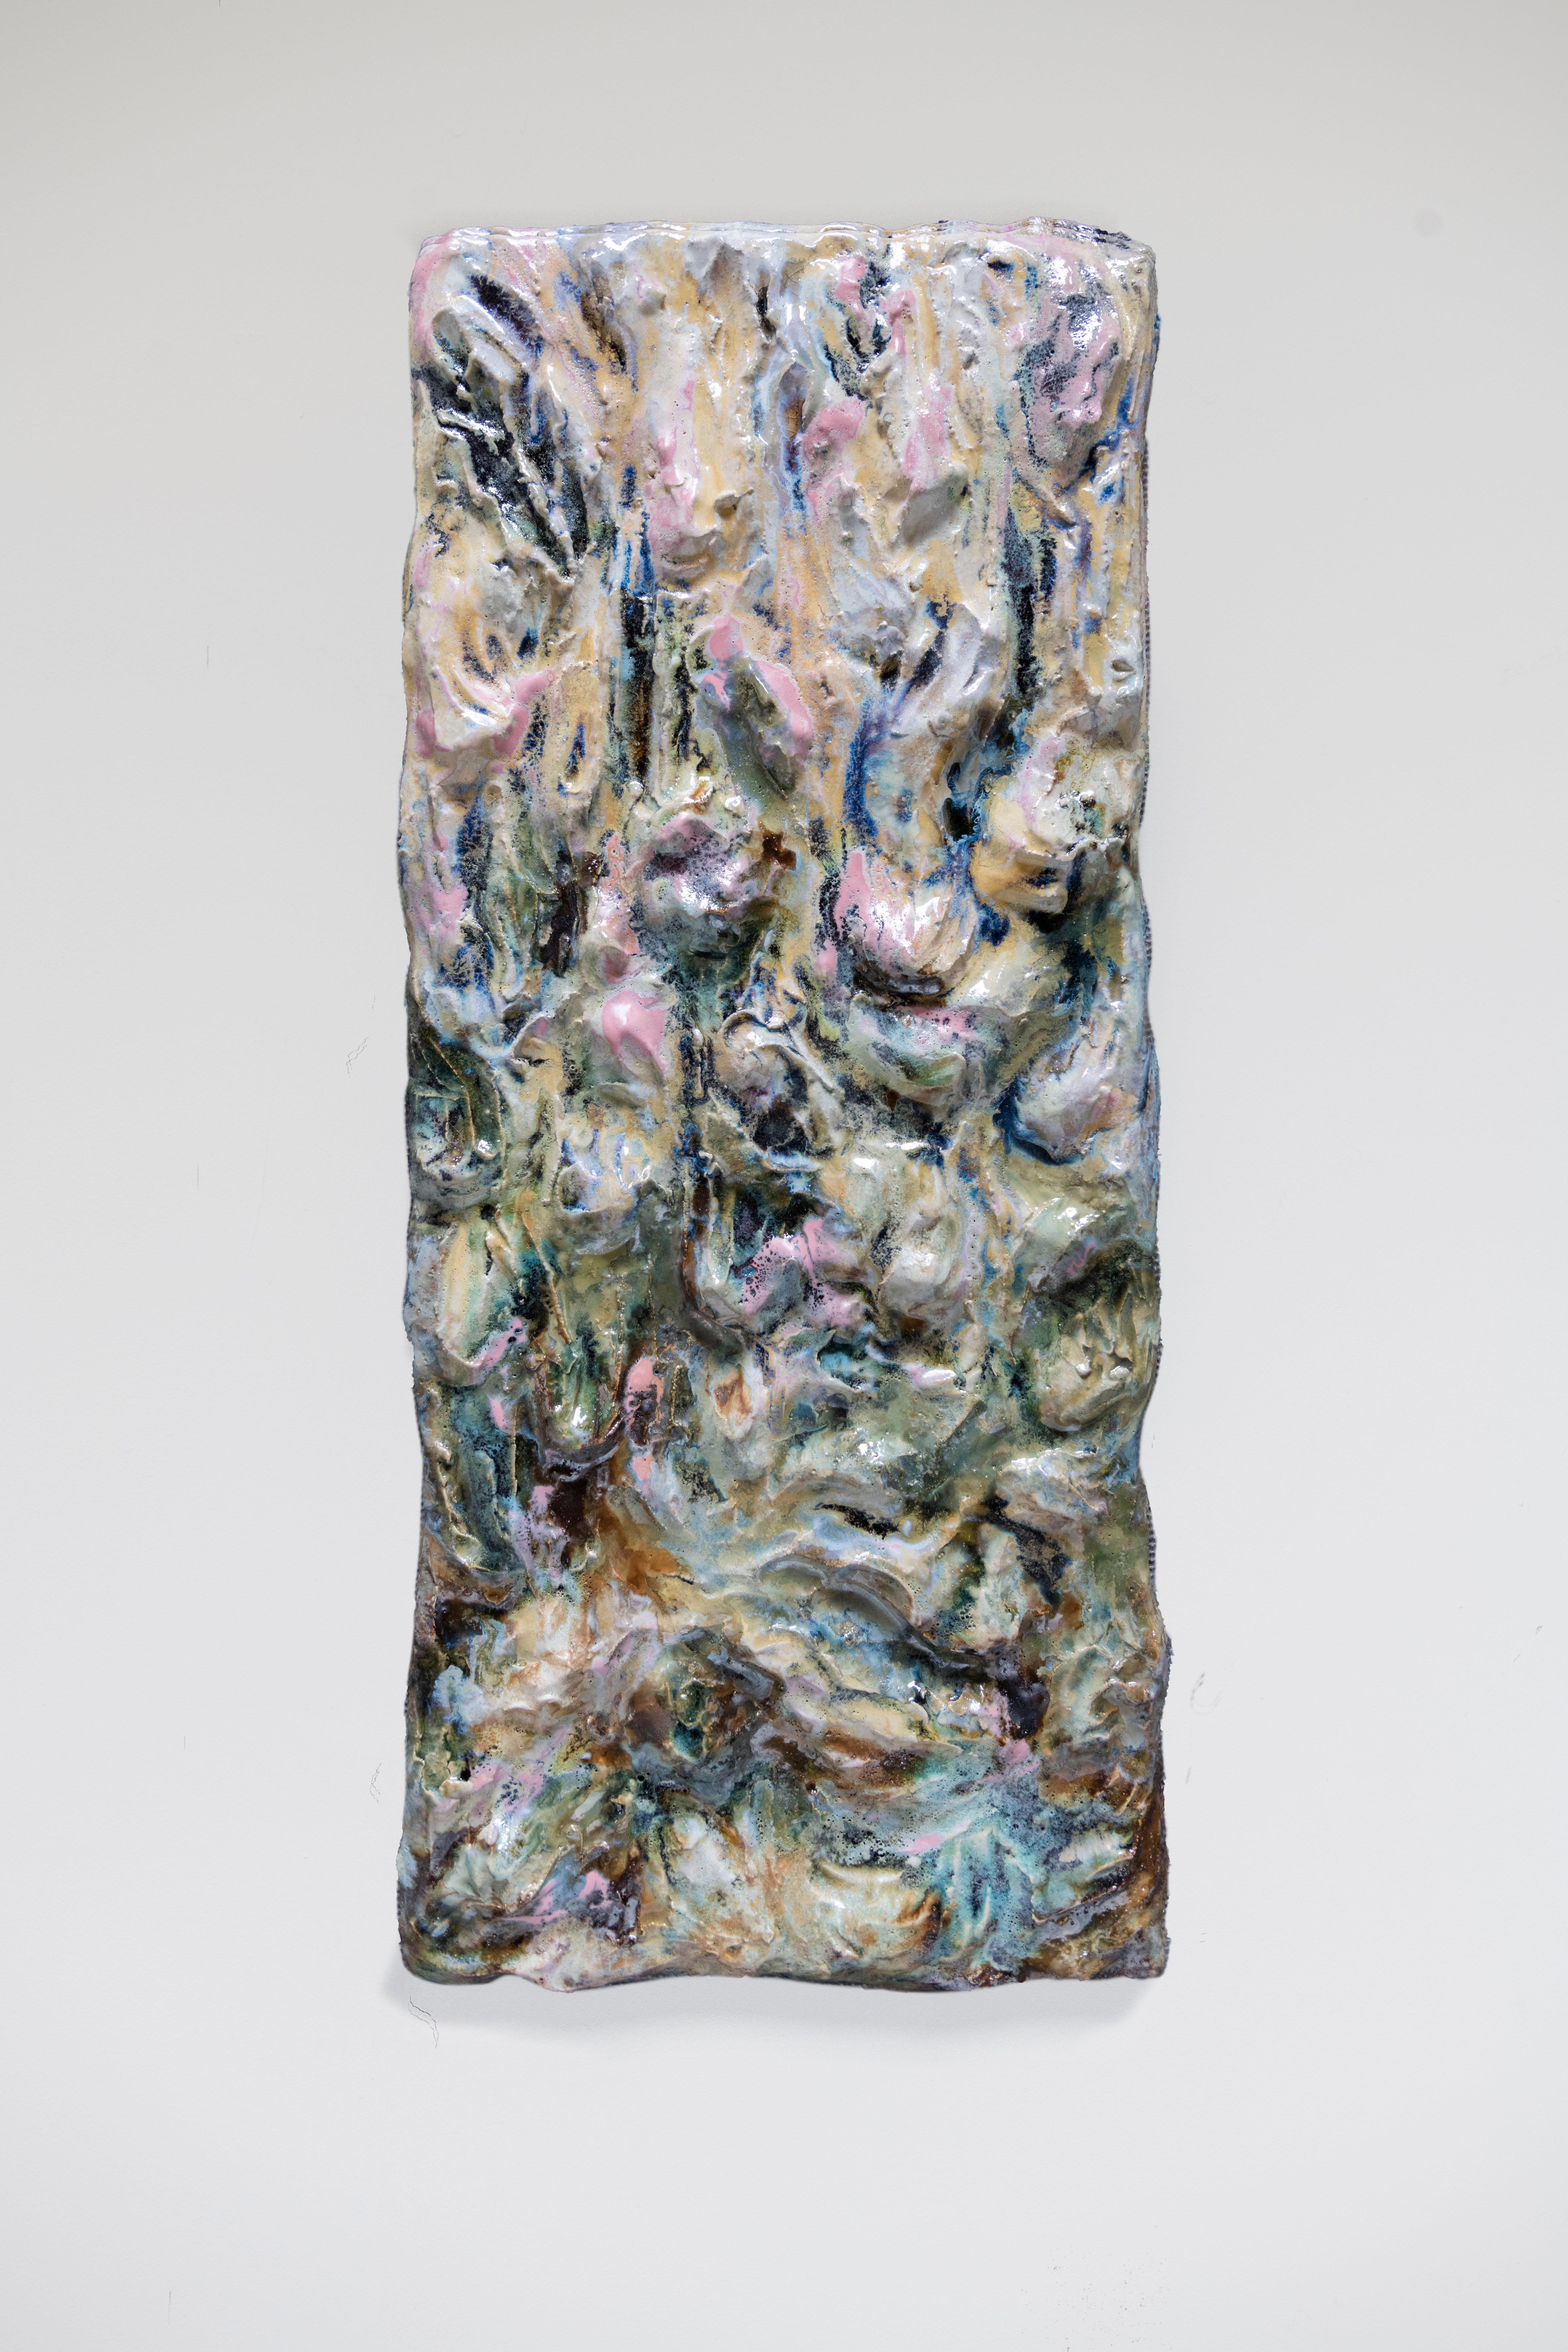 Sensing The Landscape Wandskulptur von Natasja Alers, 2021
Abmessungen: 104 x 44 cm
MATERIAL: Keramiken, Glasuren

Die bildende Künstlerin Natasja Alers (Den Haag, 1987) ist Absolventin der Gerrit Rietveld Akademie im Bereich Keramik. Alers fertigt